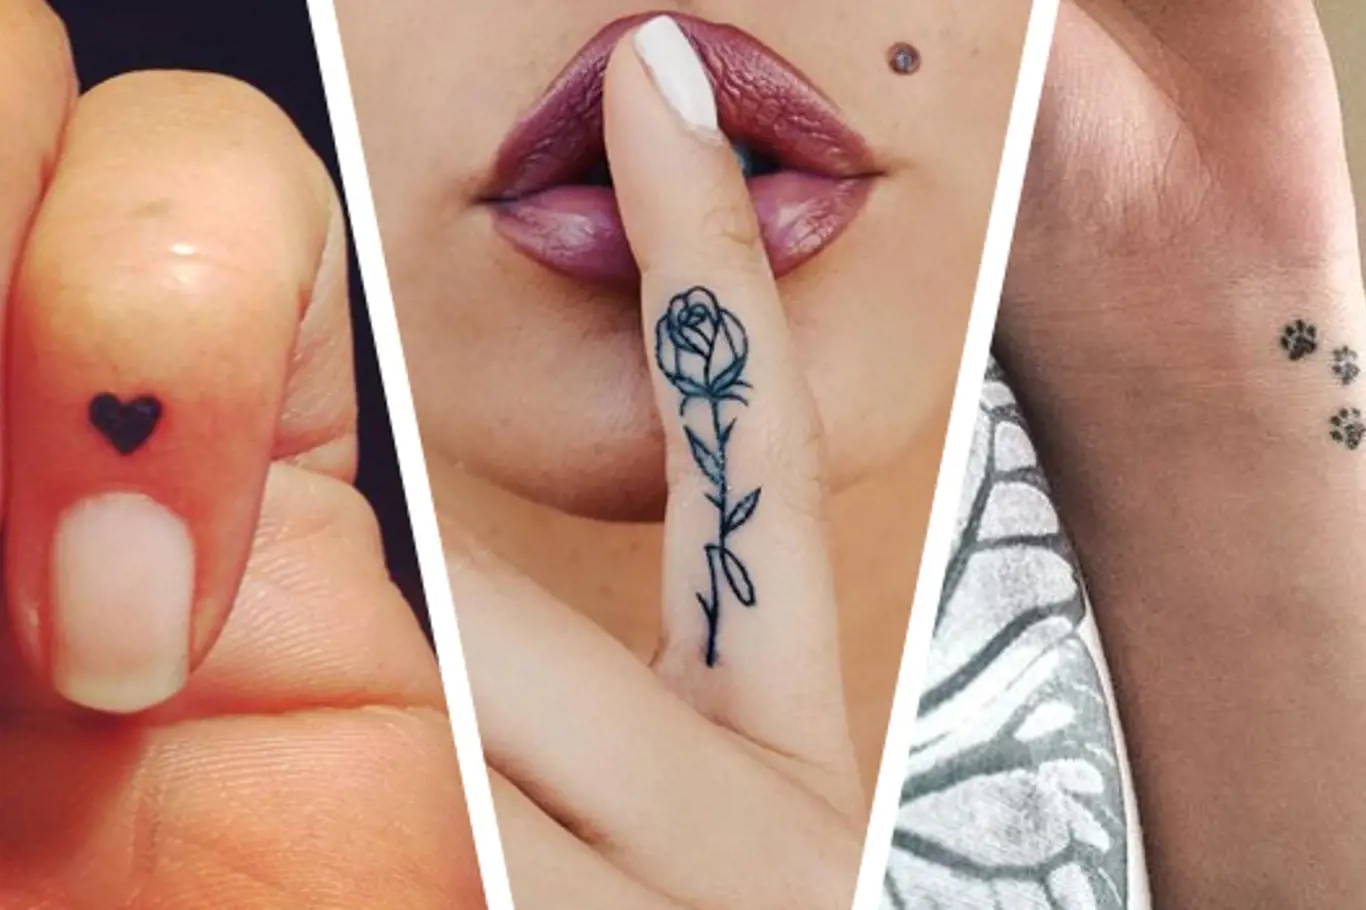 Nový trend: Drobná tetování s posláním, která ale snadno utajíte, pokud budete chtít